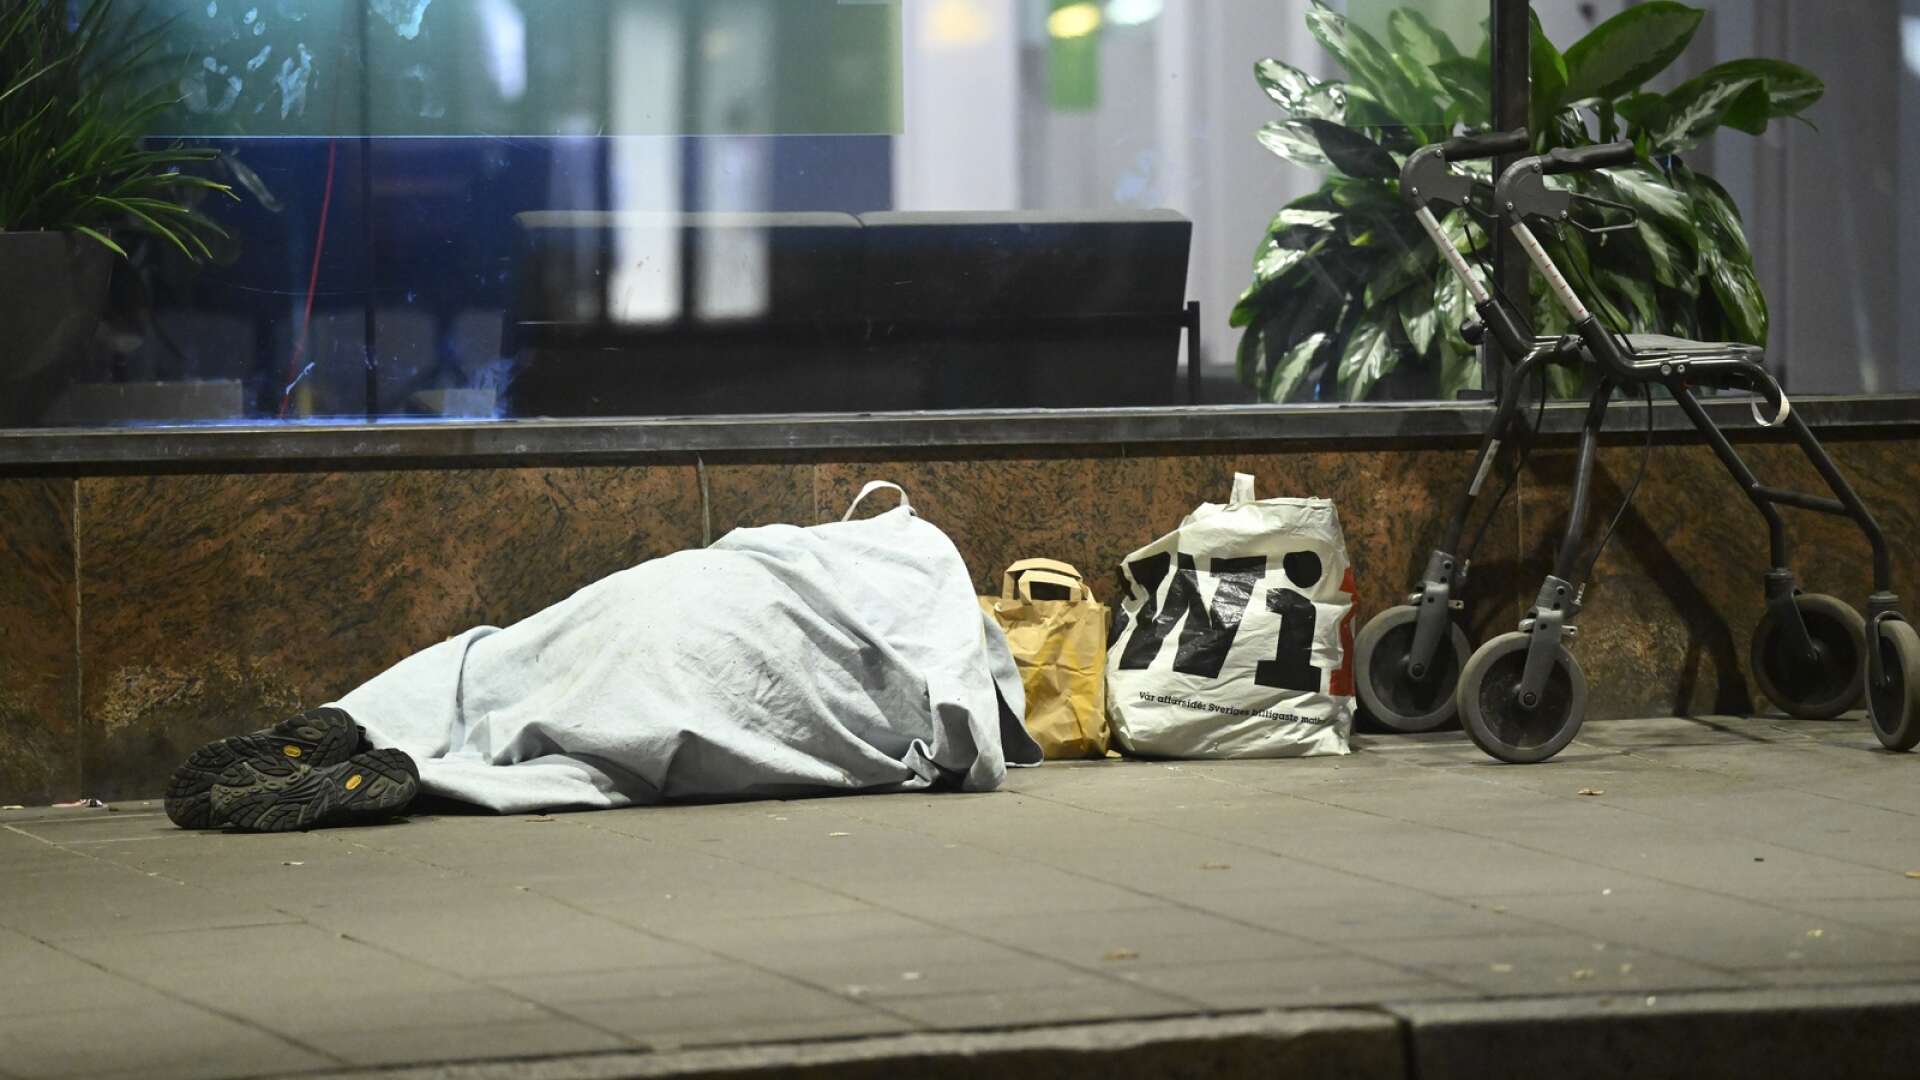 Det finns ett antal hemlösa i Skövde –  i dagarna har en person setts sova utomhus i de centrala delarna av staden (Bilden är en illustration).